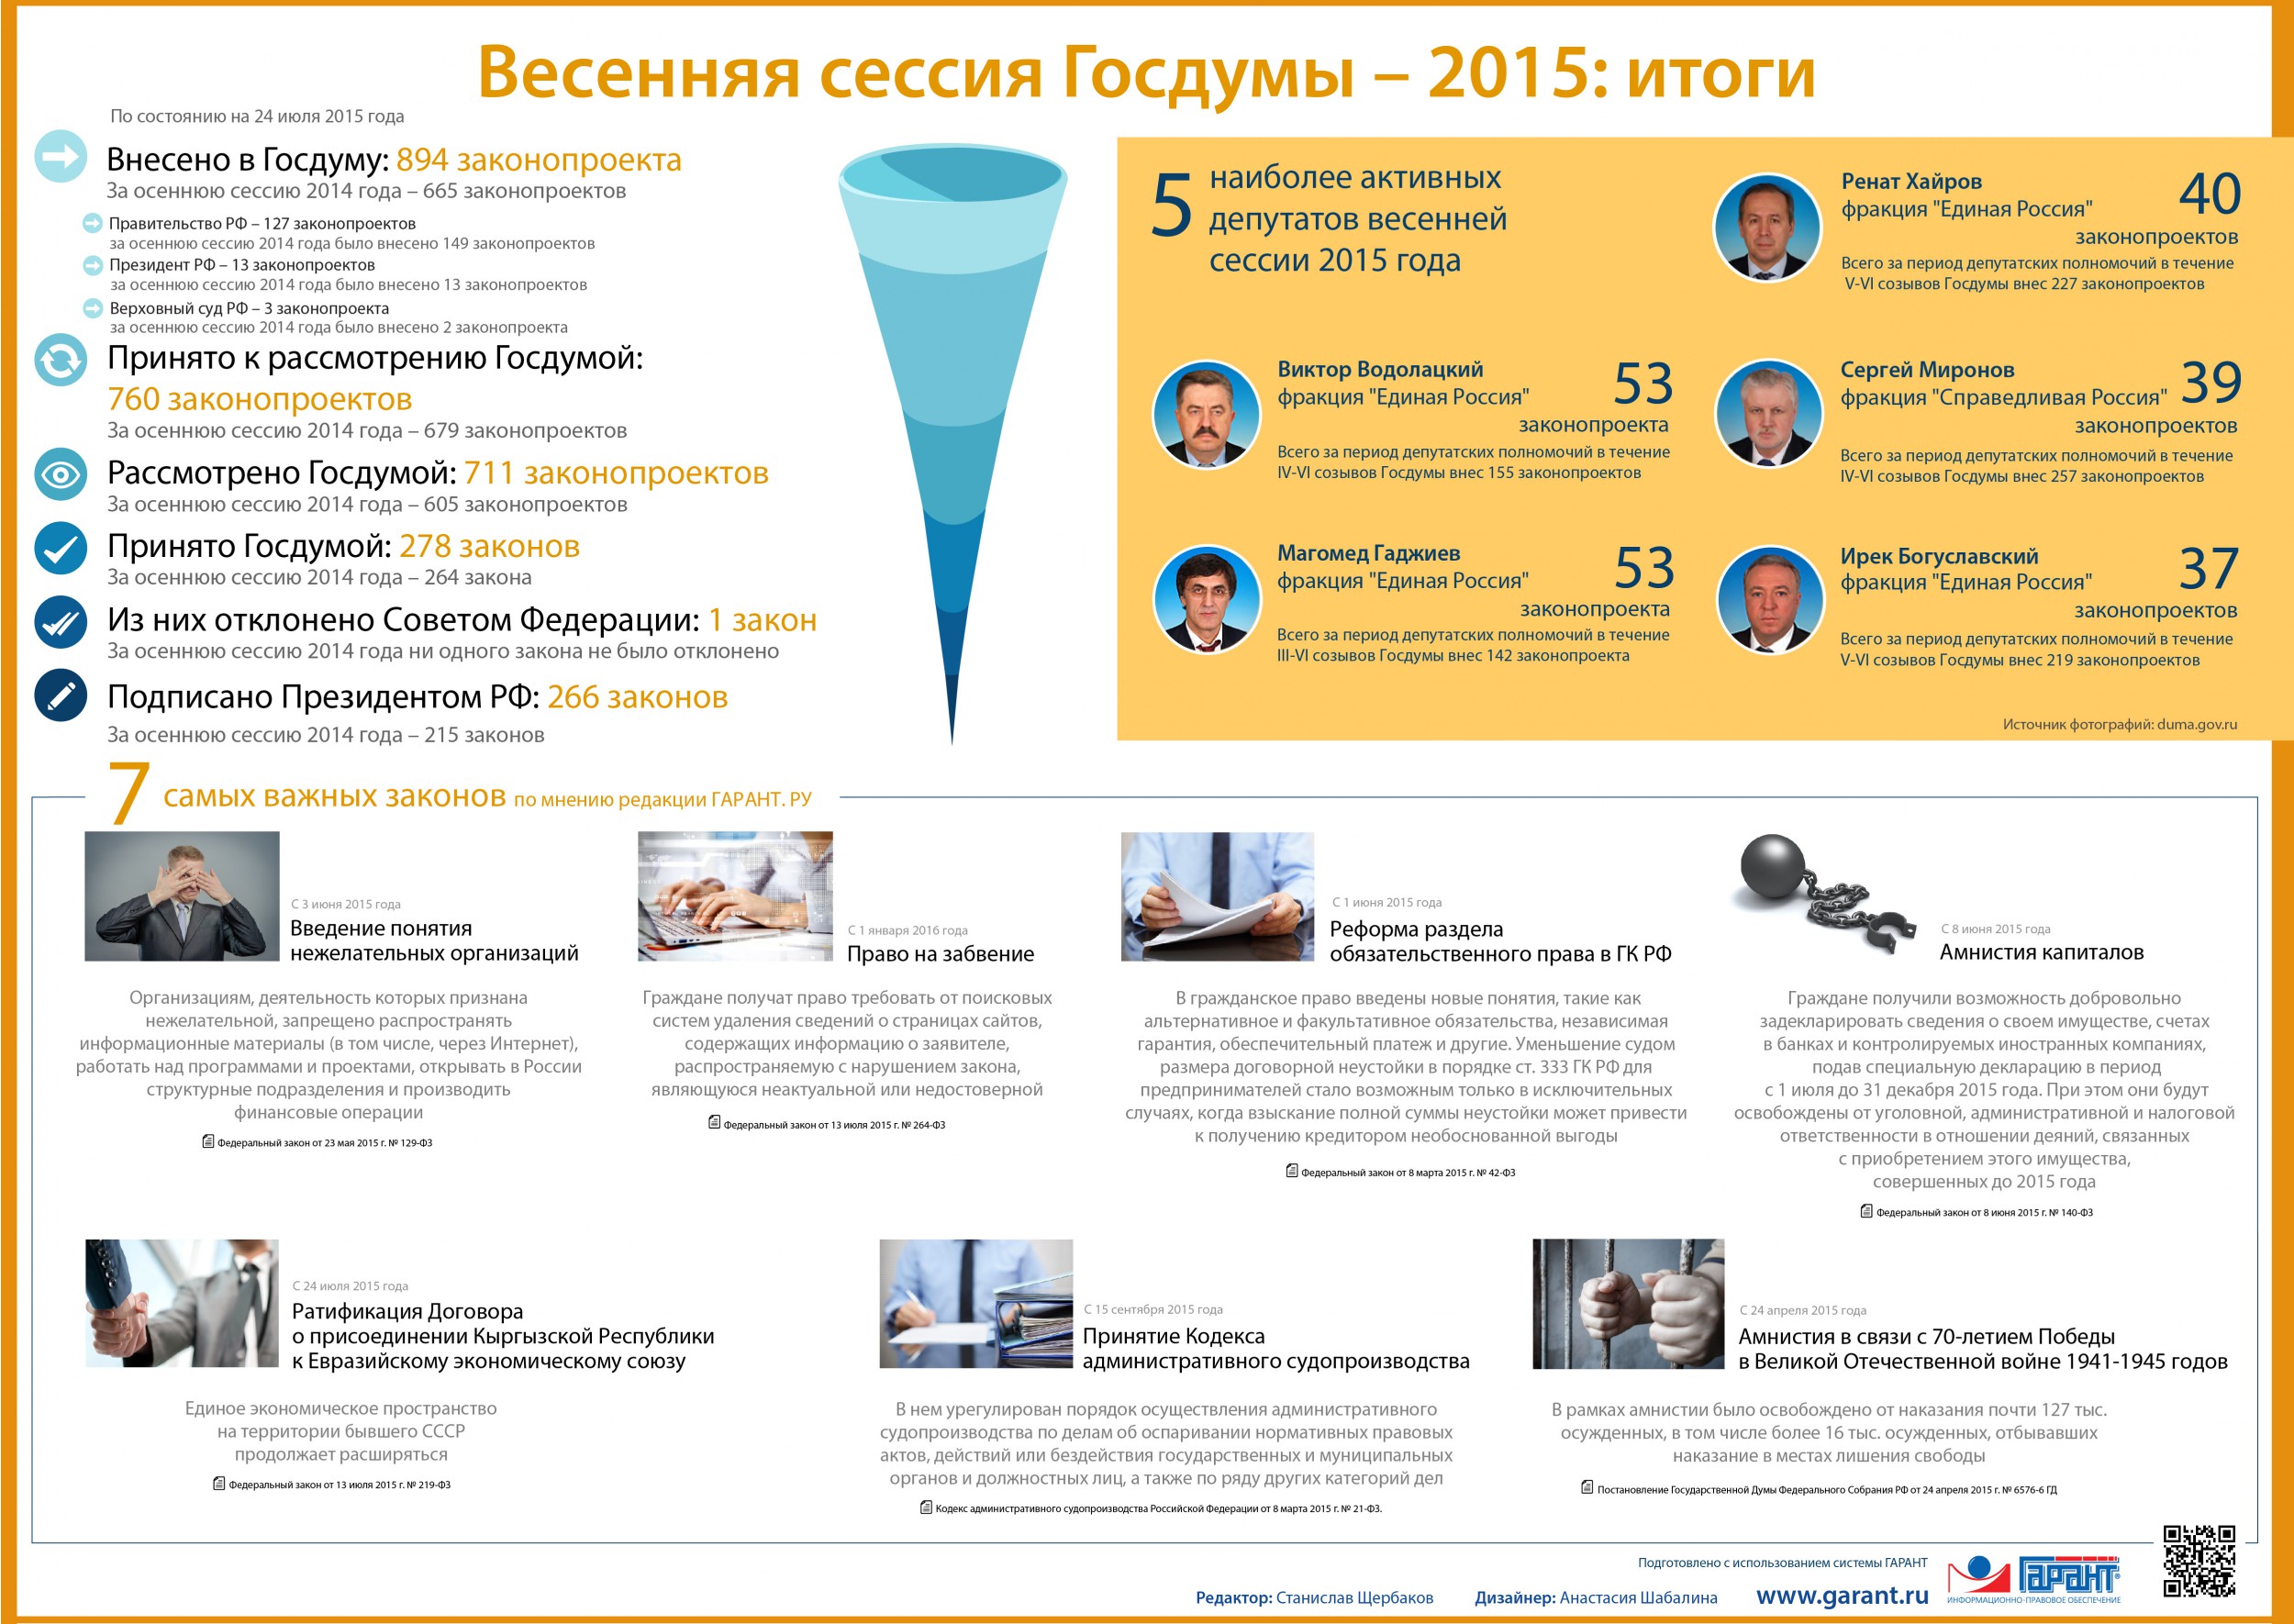 Весенняя сессия Госдумы — 2015: итоги